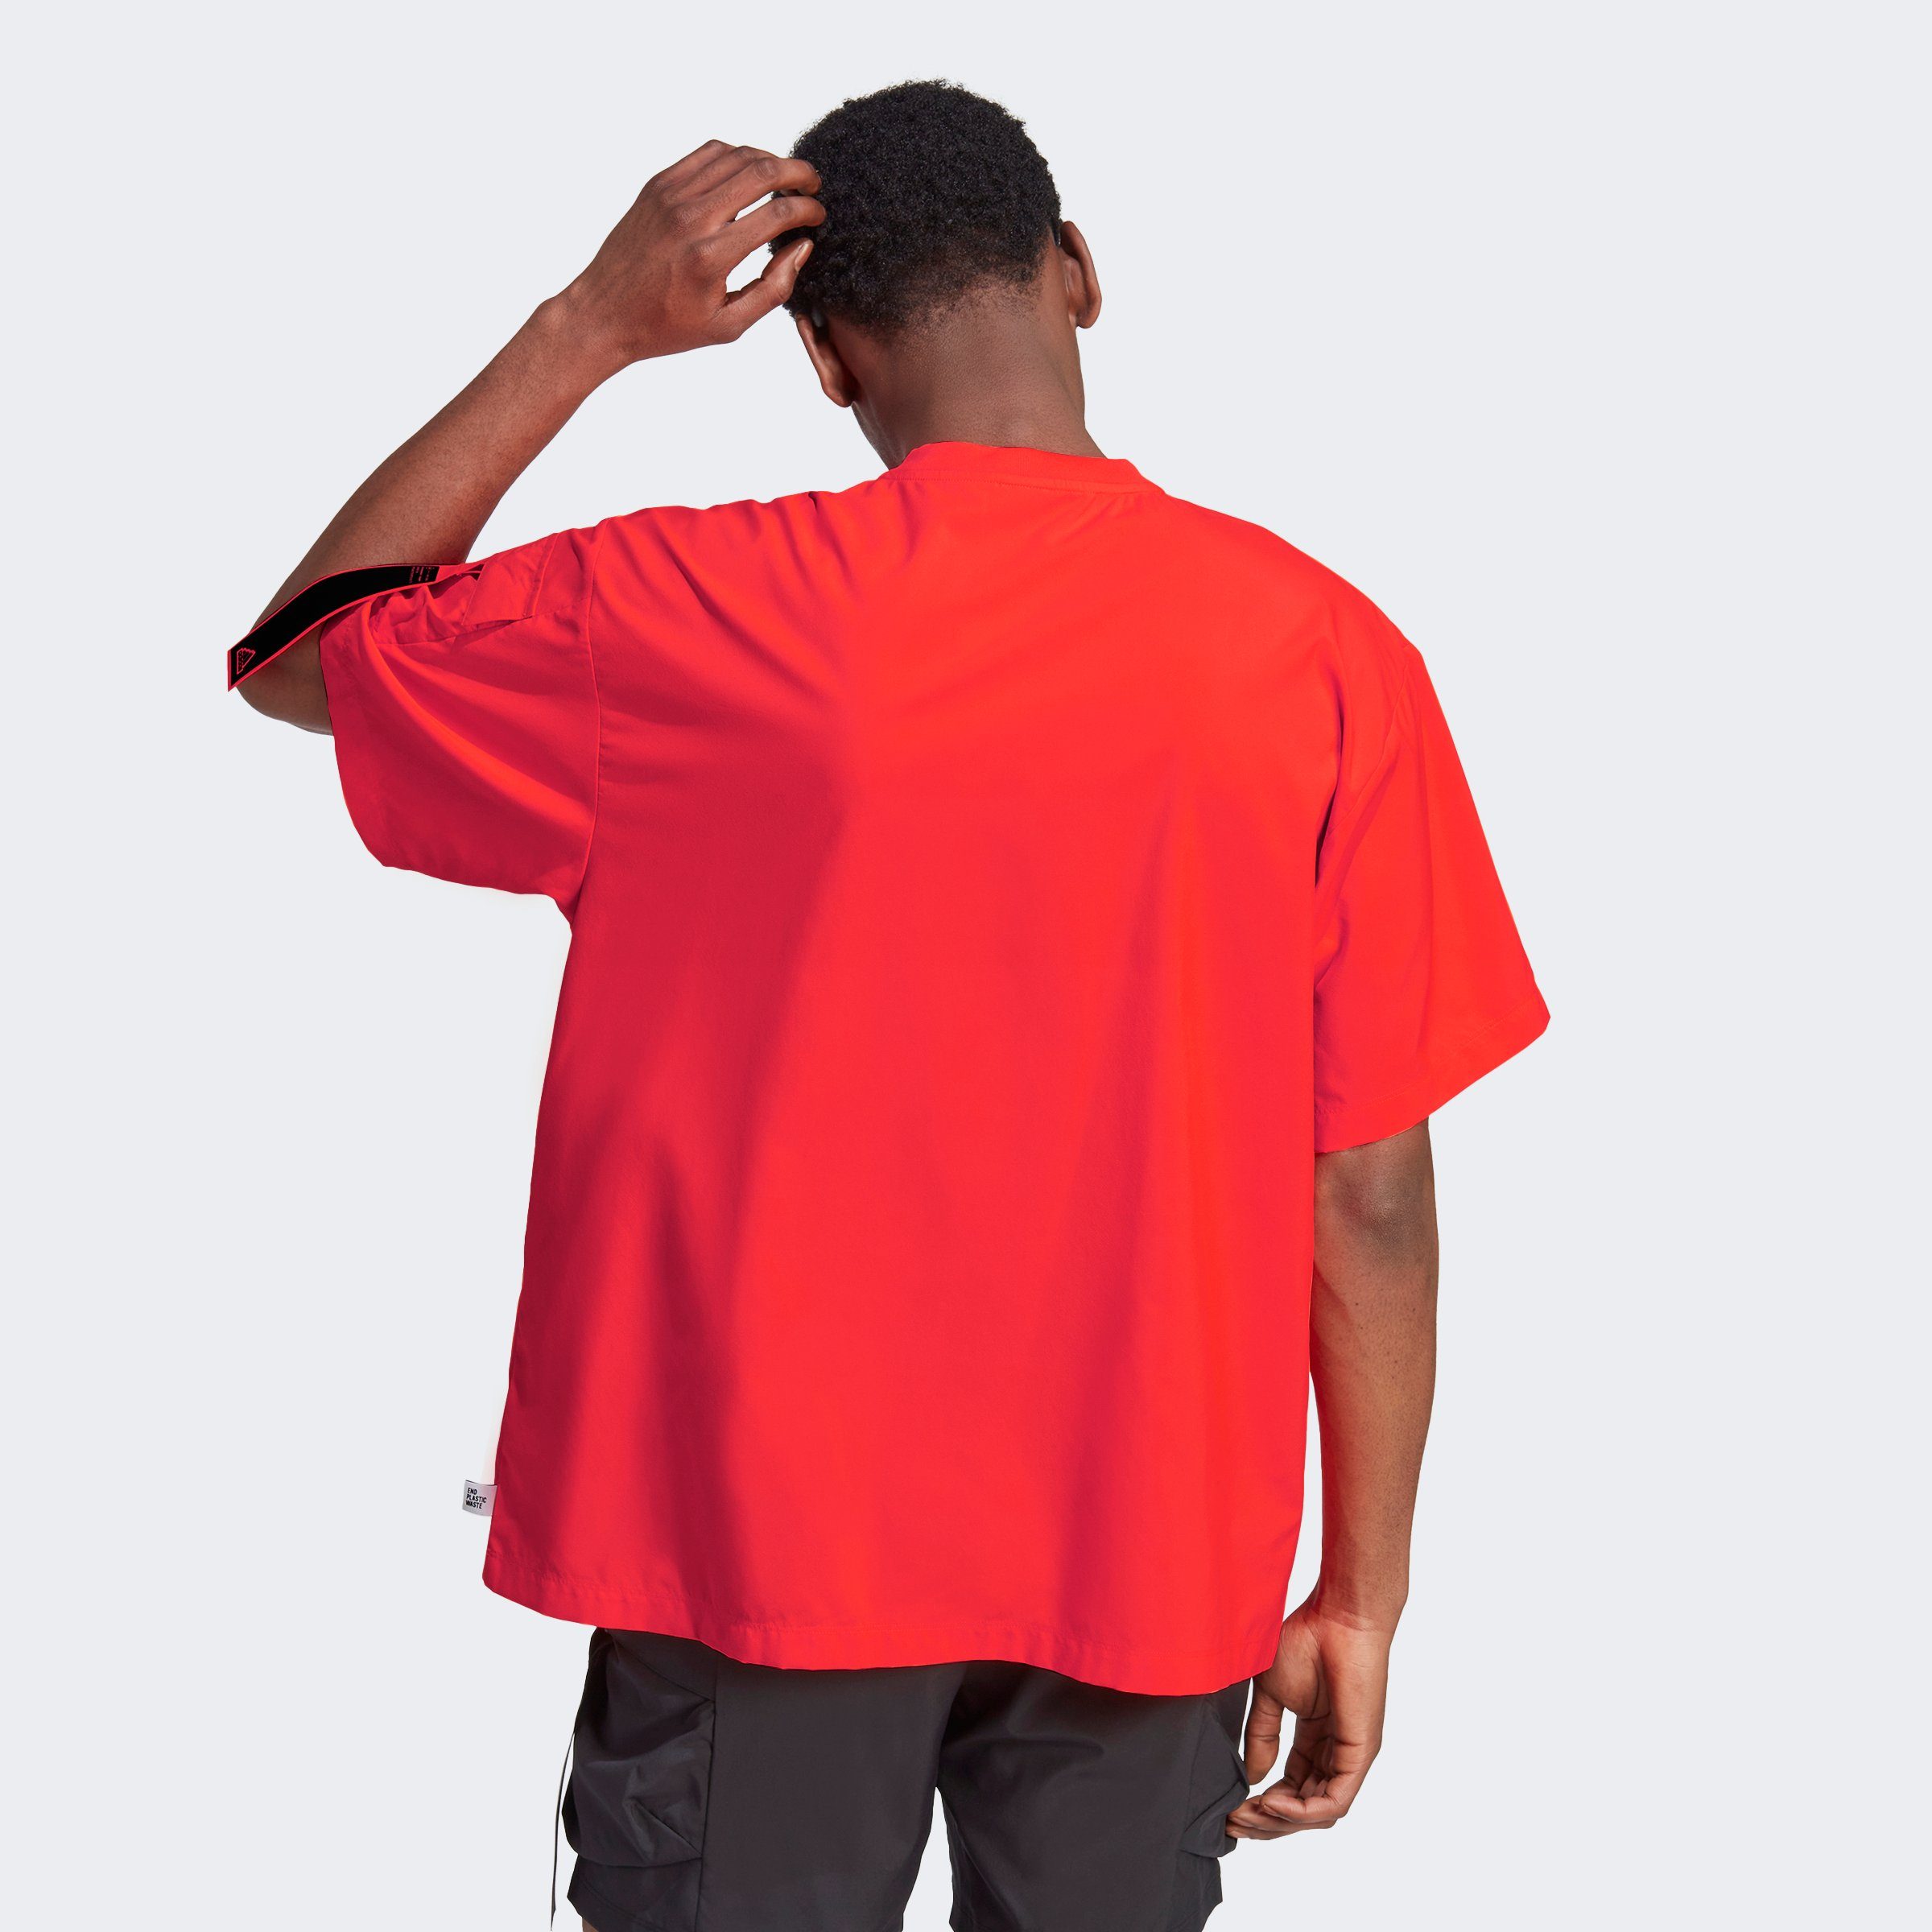 CITY Solar ESCAPE adidas Red T-Shirt Sportswear